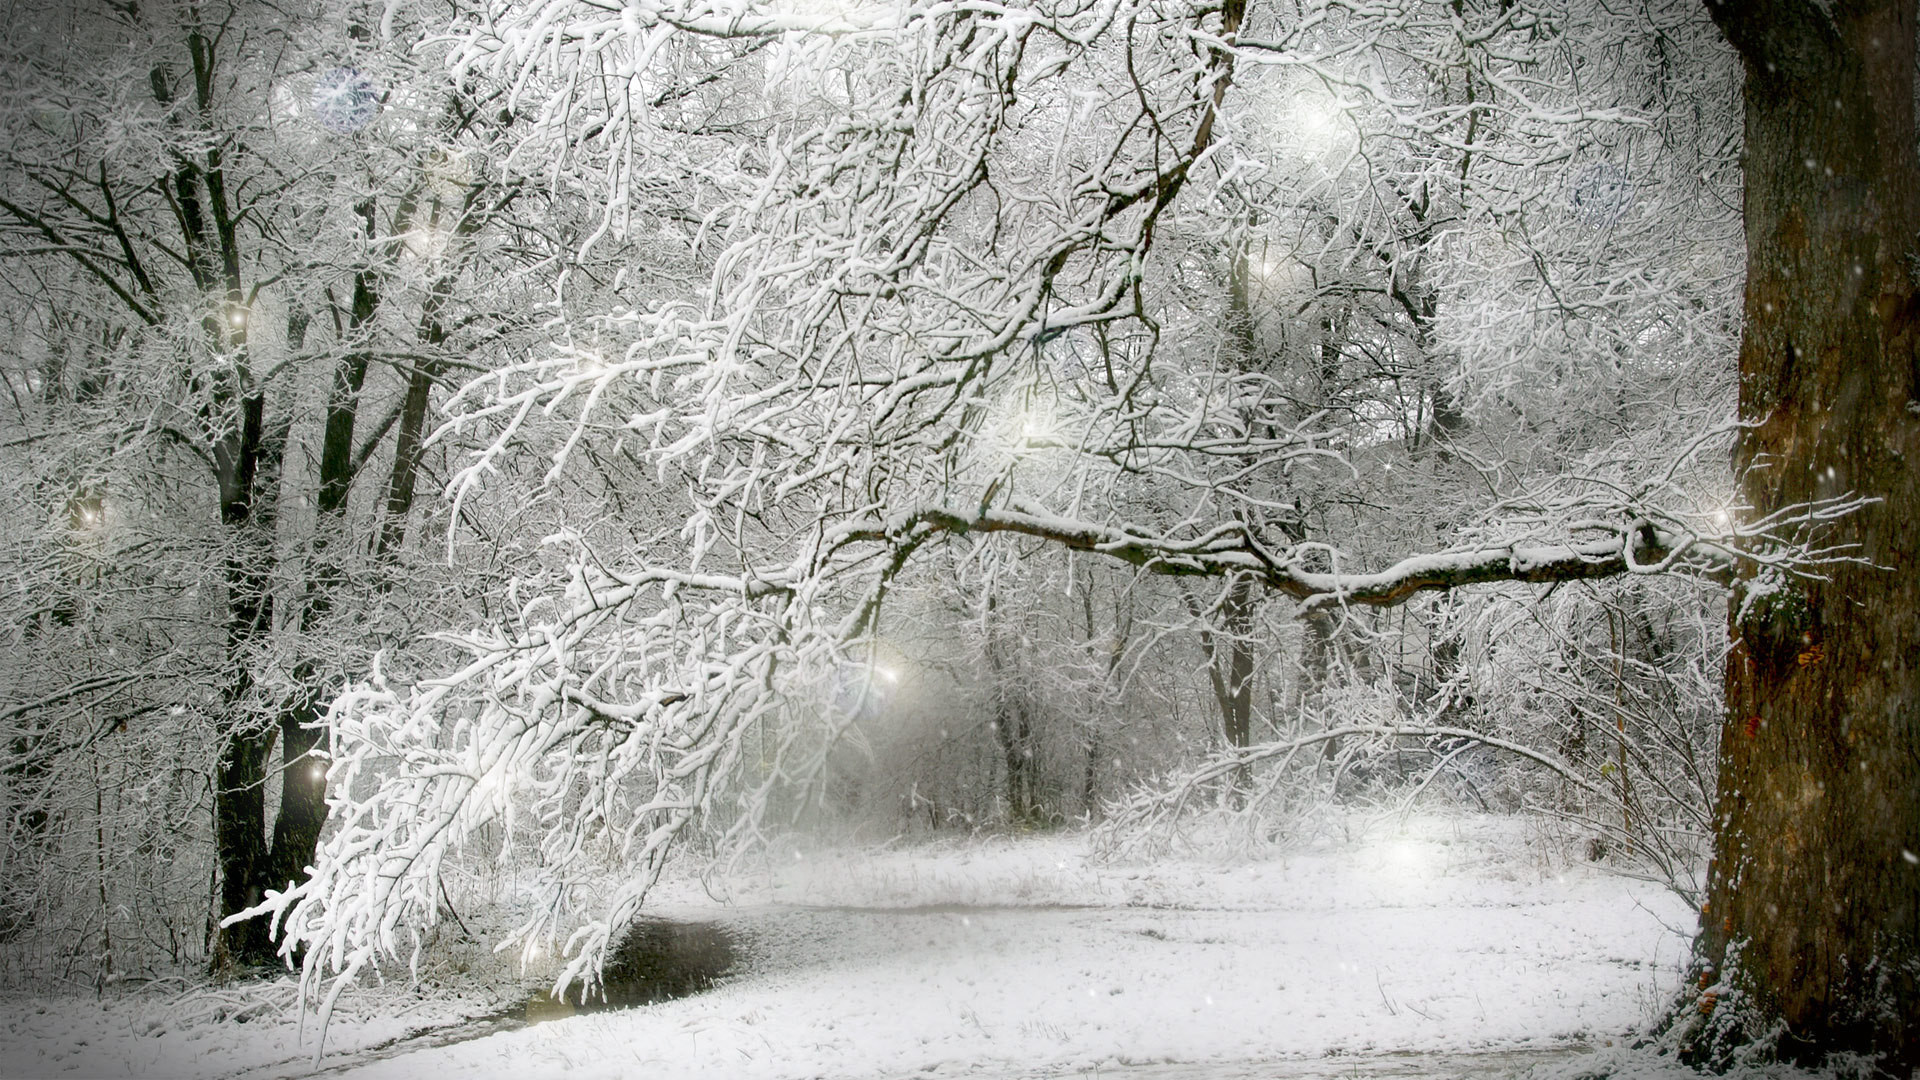 1920x1080 images of winter forest scenes | scenes of winter - Desktop Wallpaper